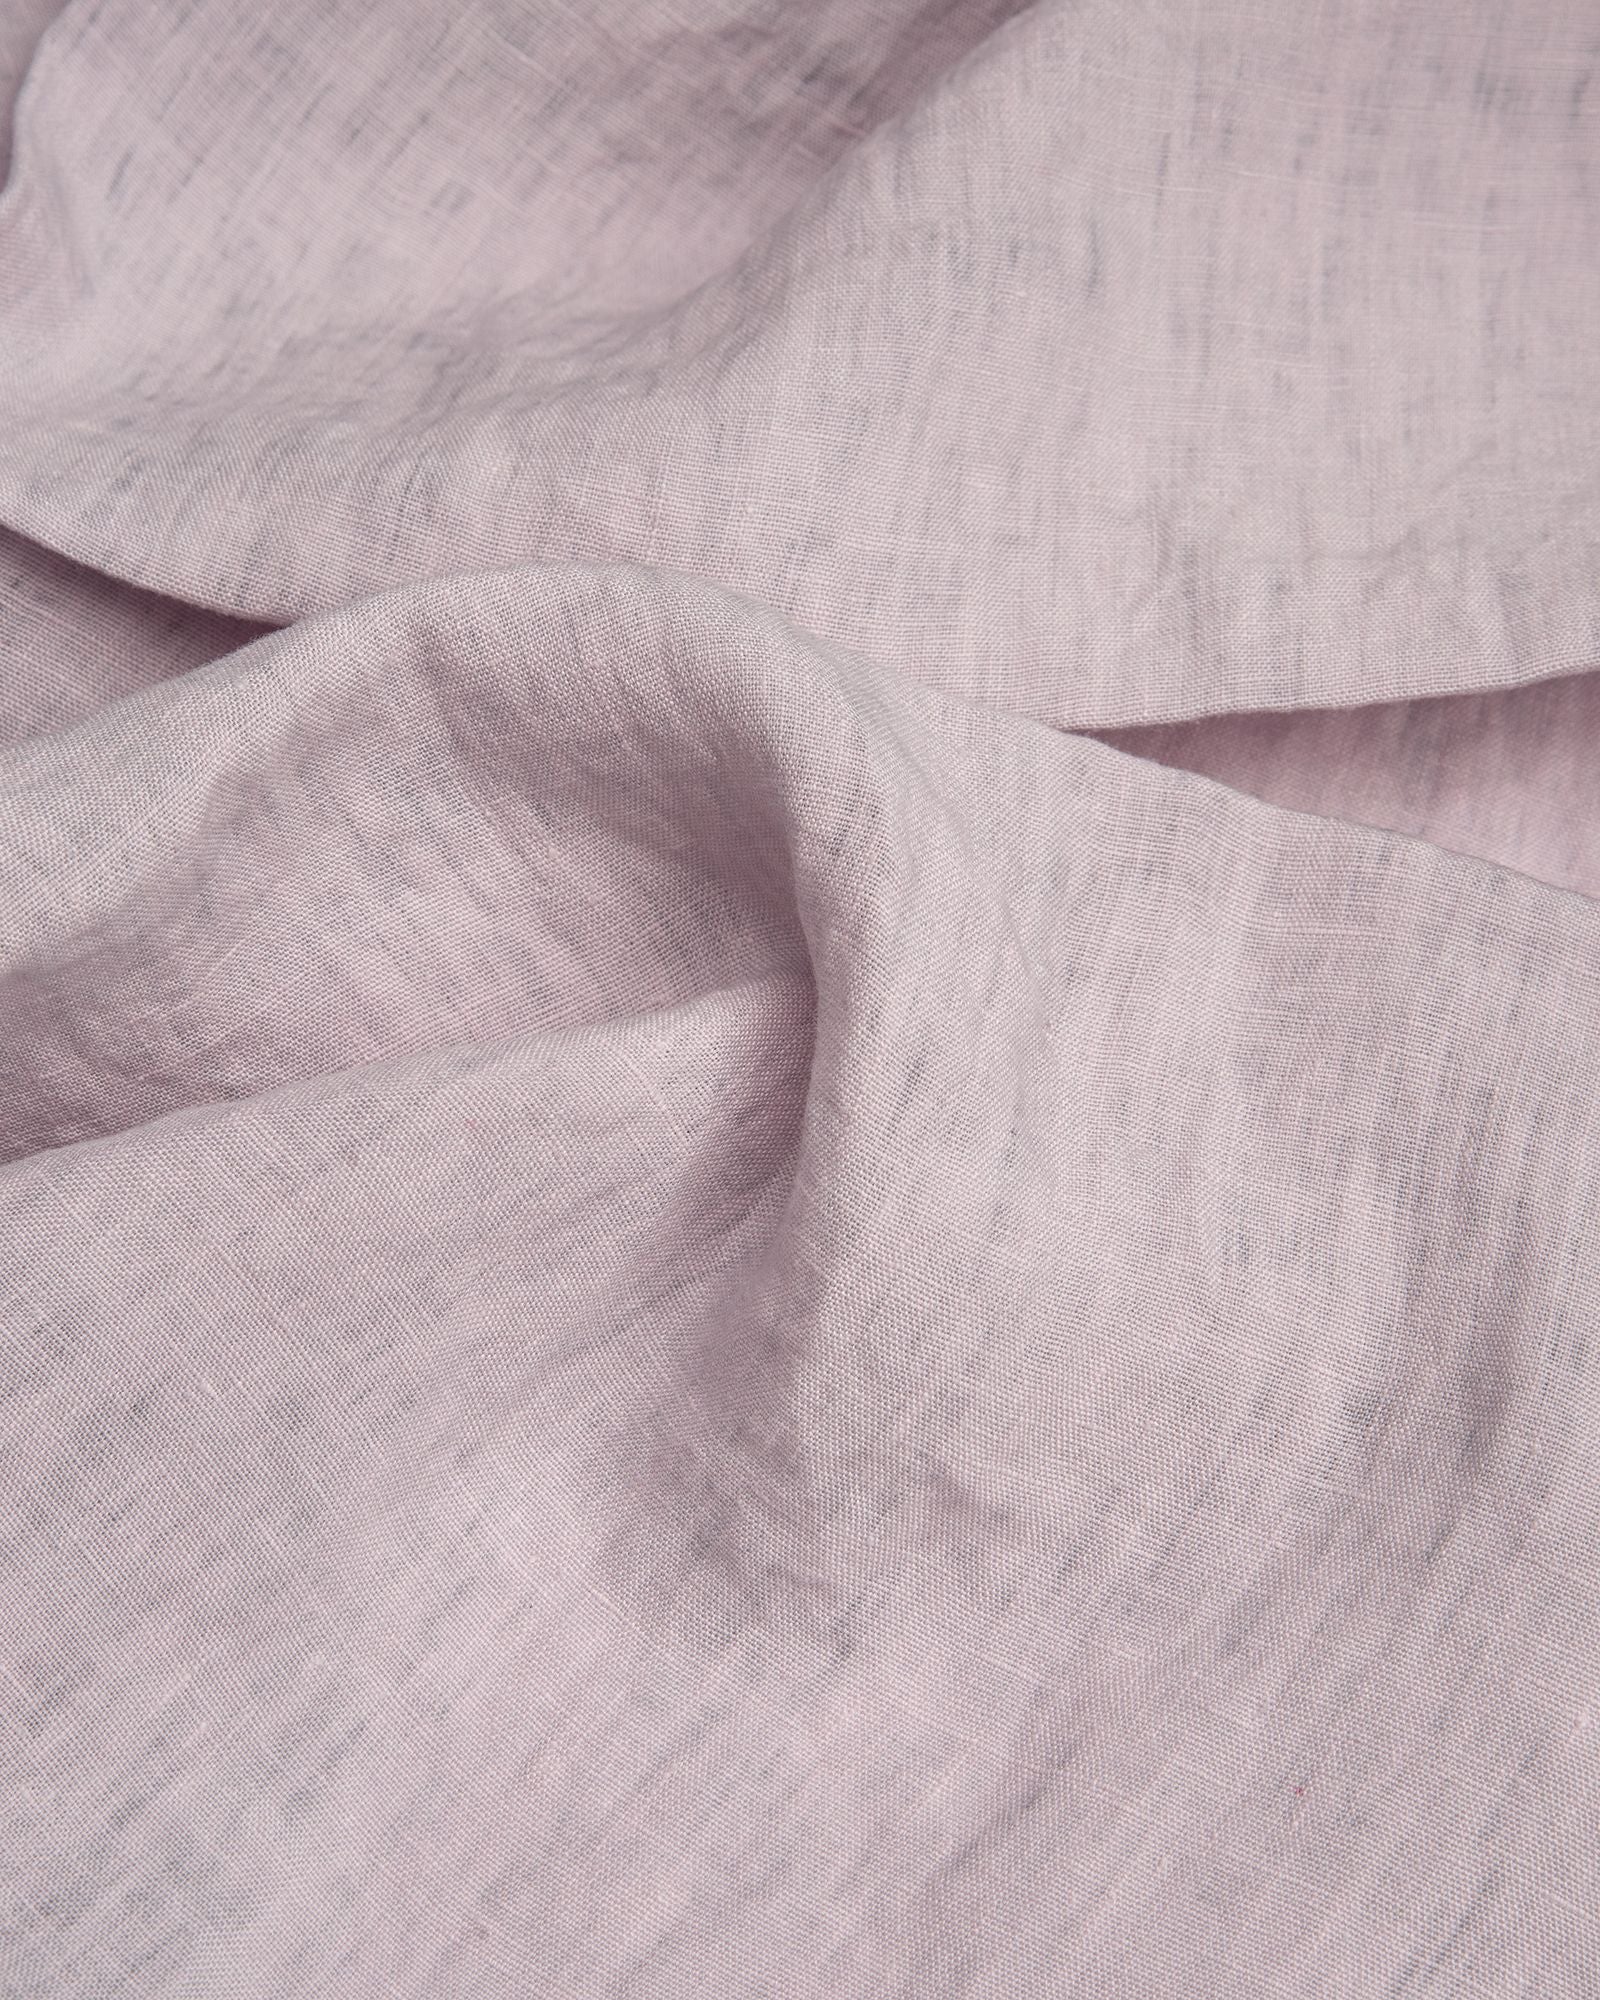 Größe: 51x 51 cm Farbe: lavendel #farbe_lavendel